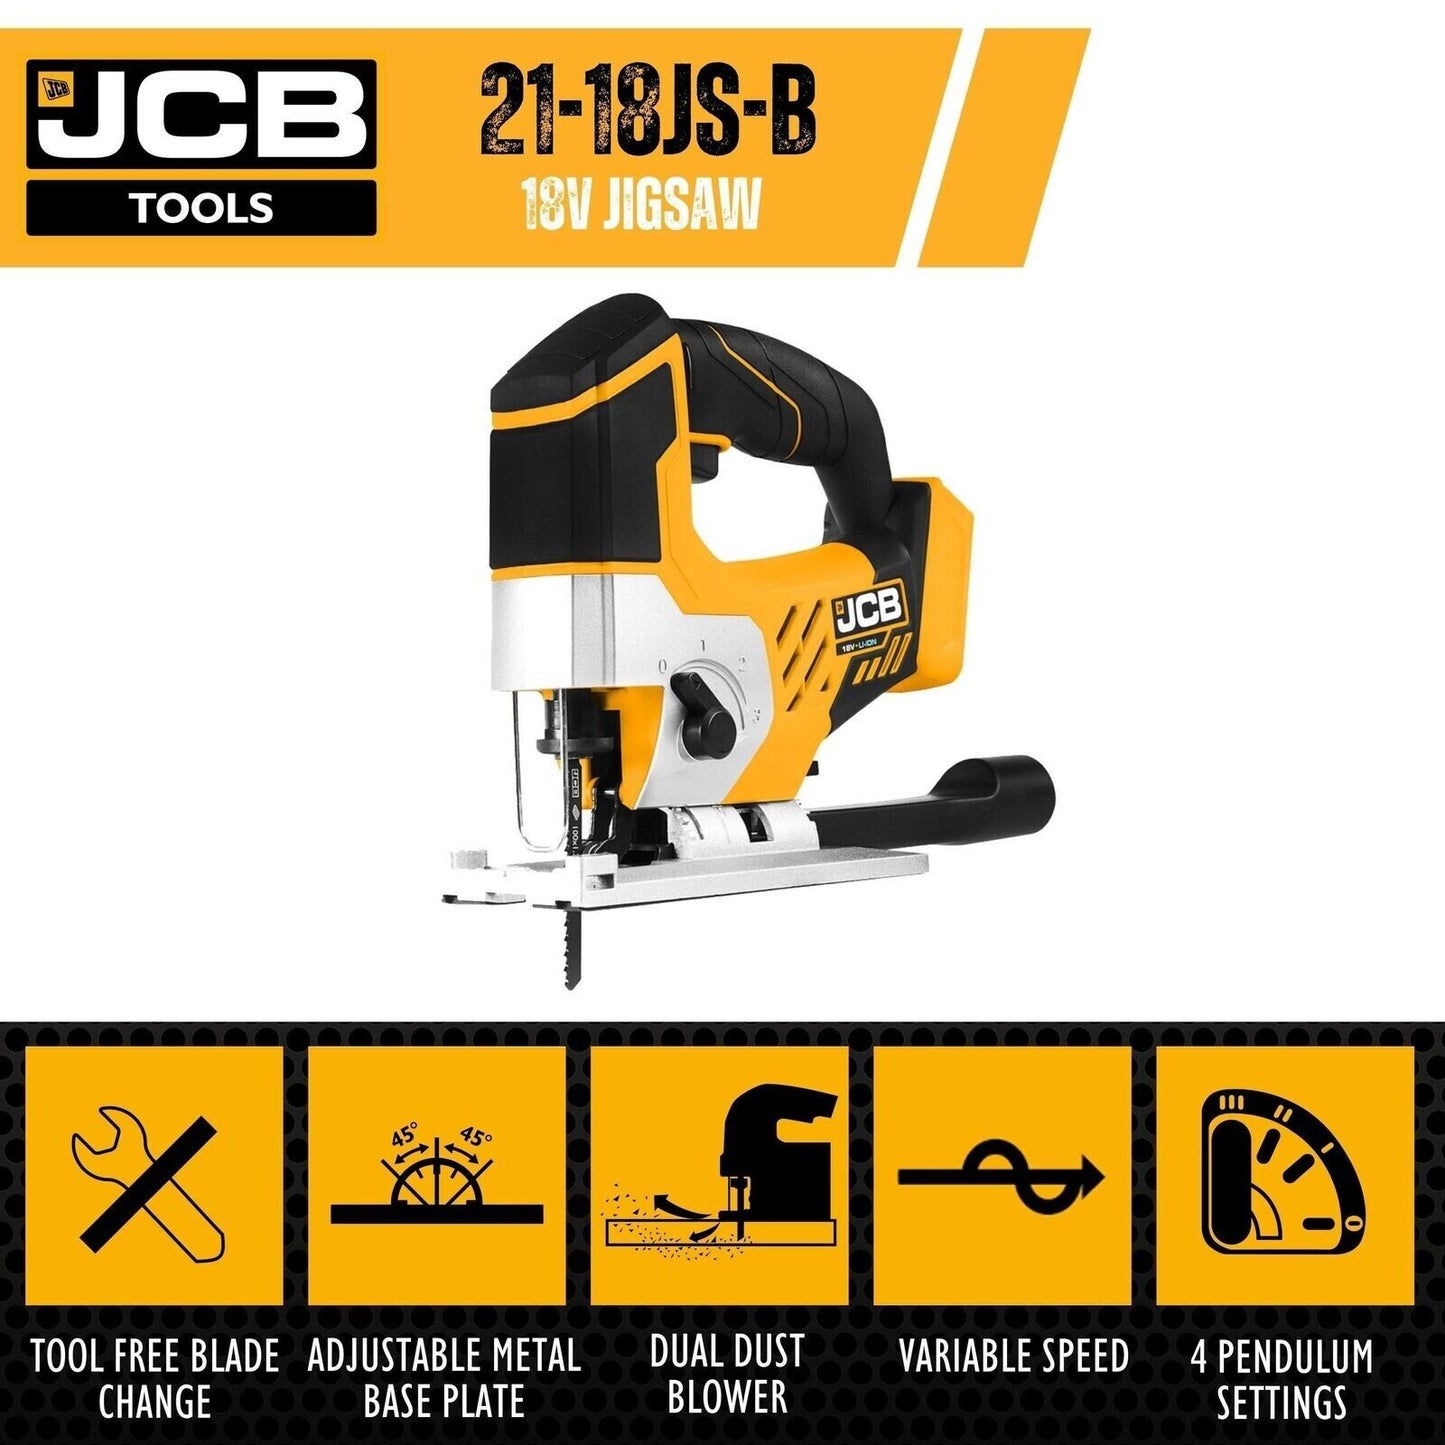 JCB 21-18JS-B 18V Cordless Jigsaw Body Only